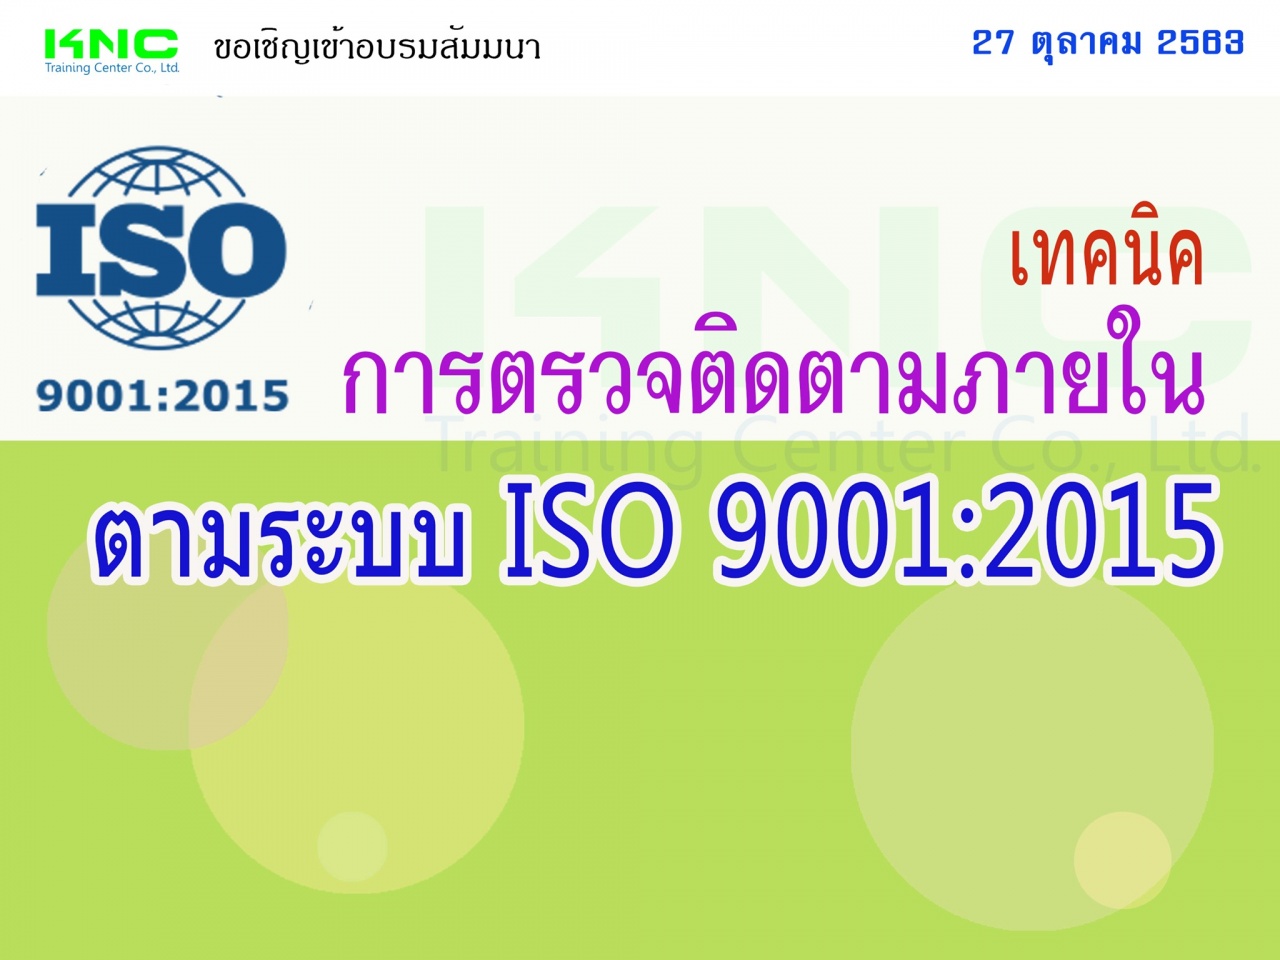 เทคนิคการตรวจติดตามภายใน ตามระบบ ISO 9001:2015